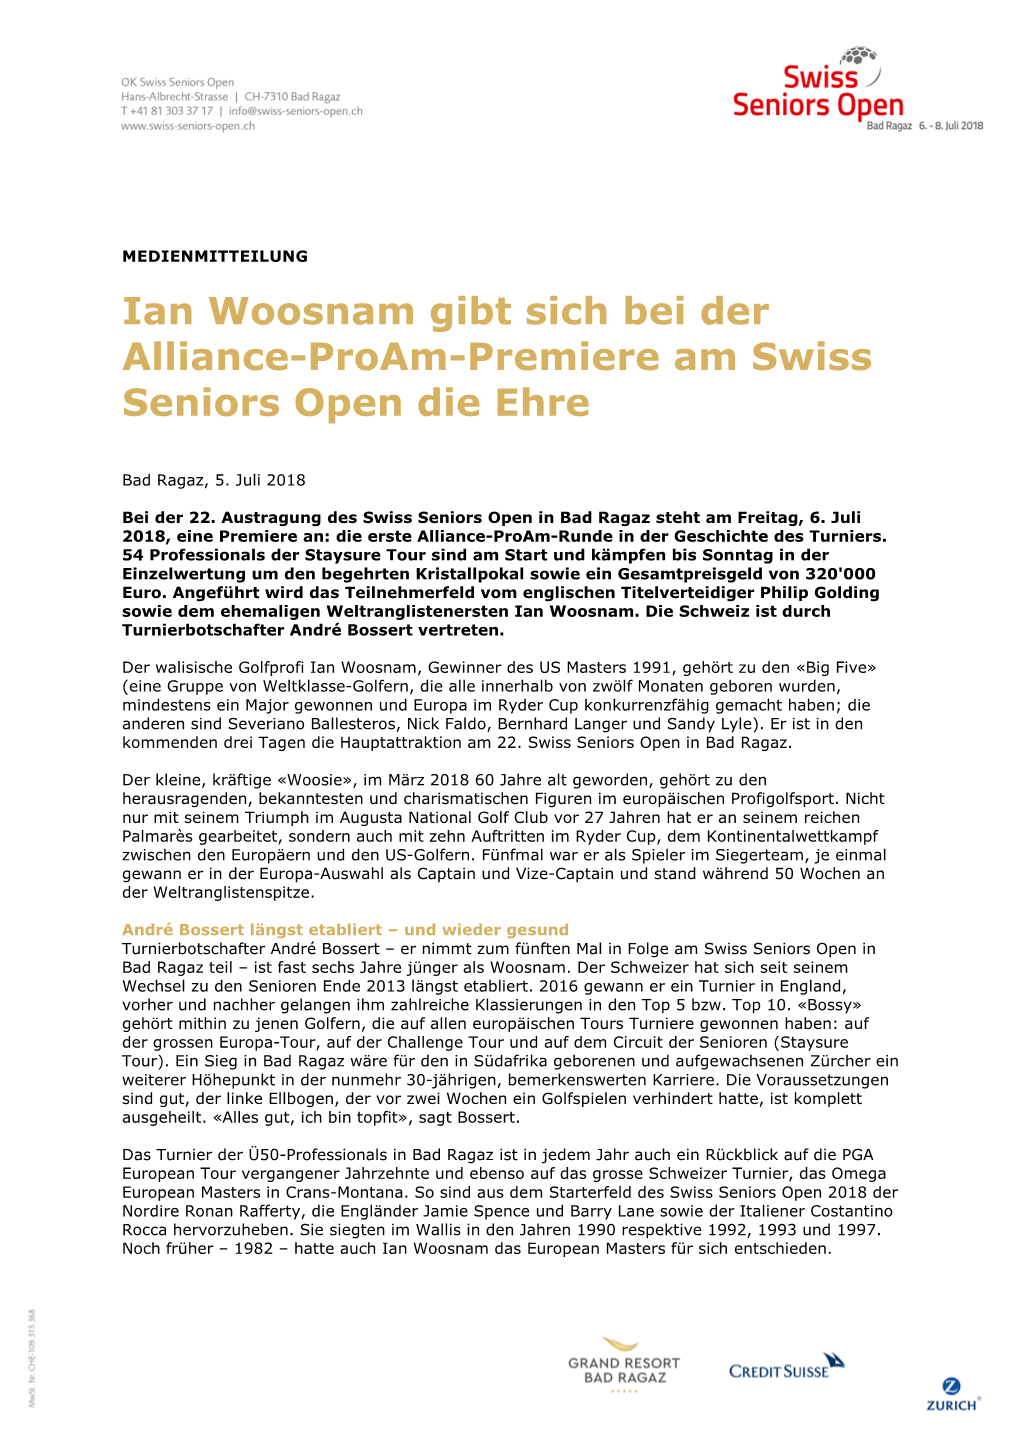 Ian Woosnam Gibt Sich Bei Der Alliance-Proam-Premiere Am Swiss Seniors Open Die Ehre